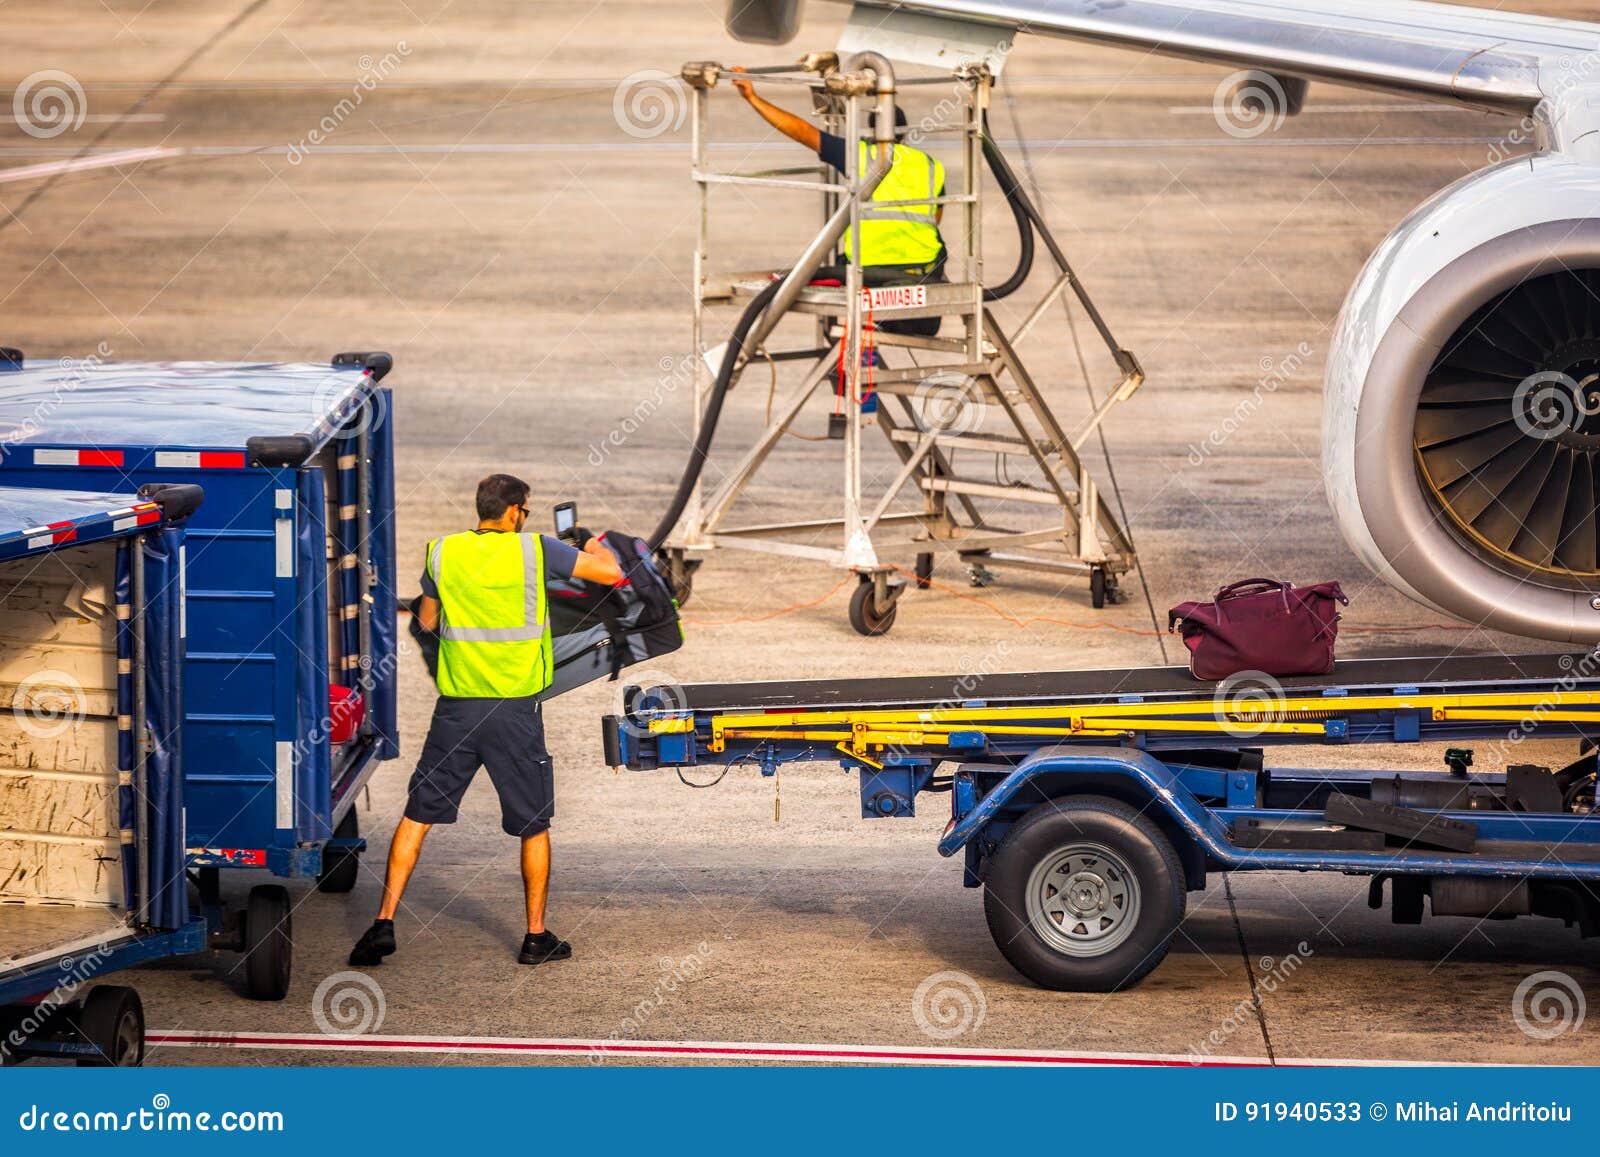 simairport baggage load